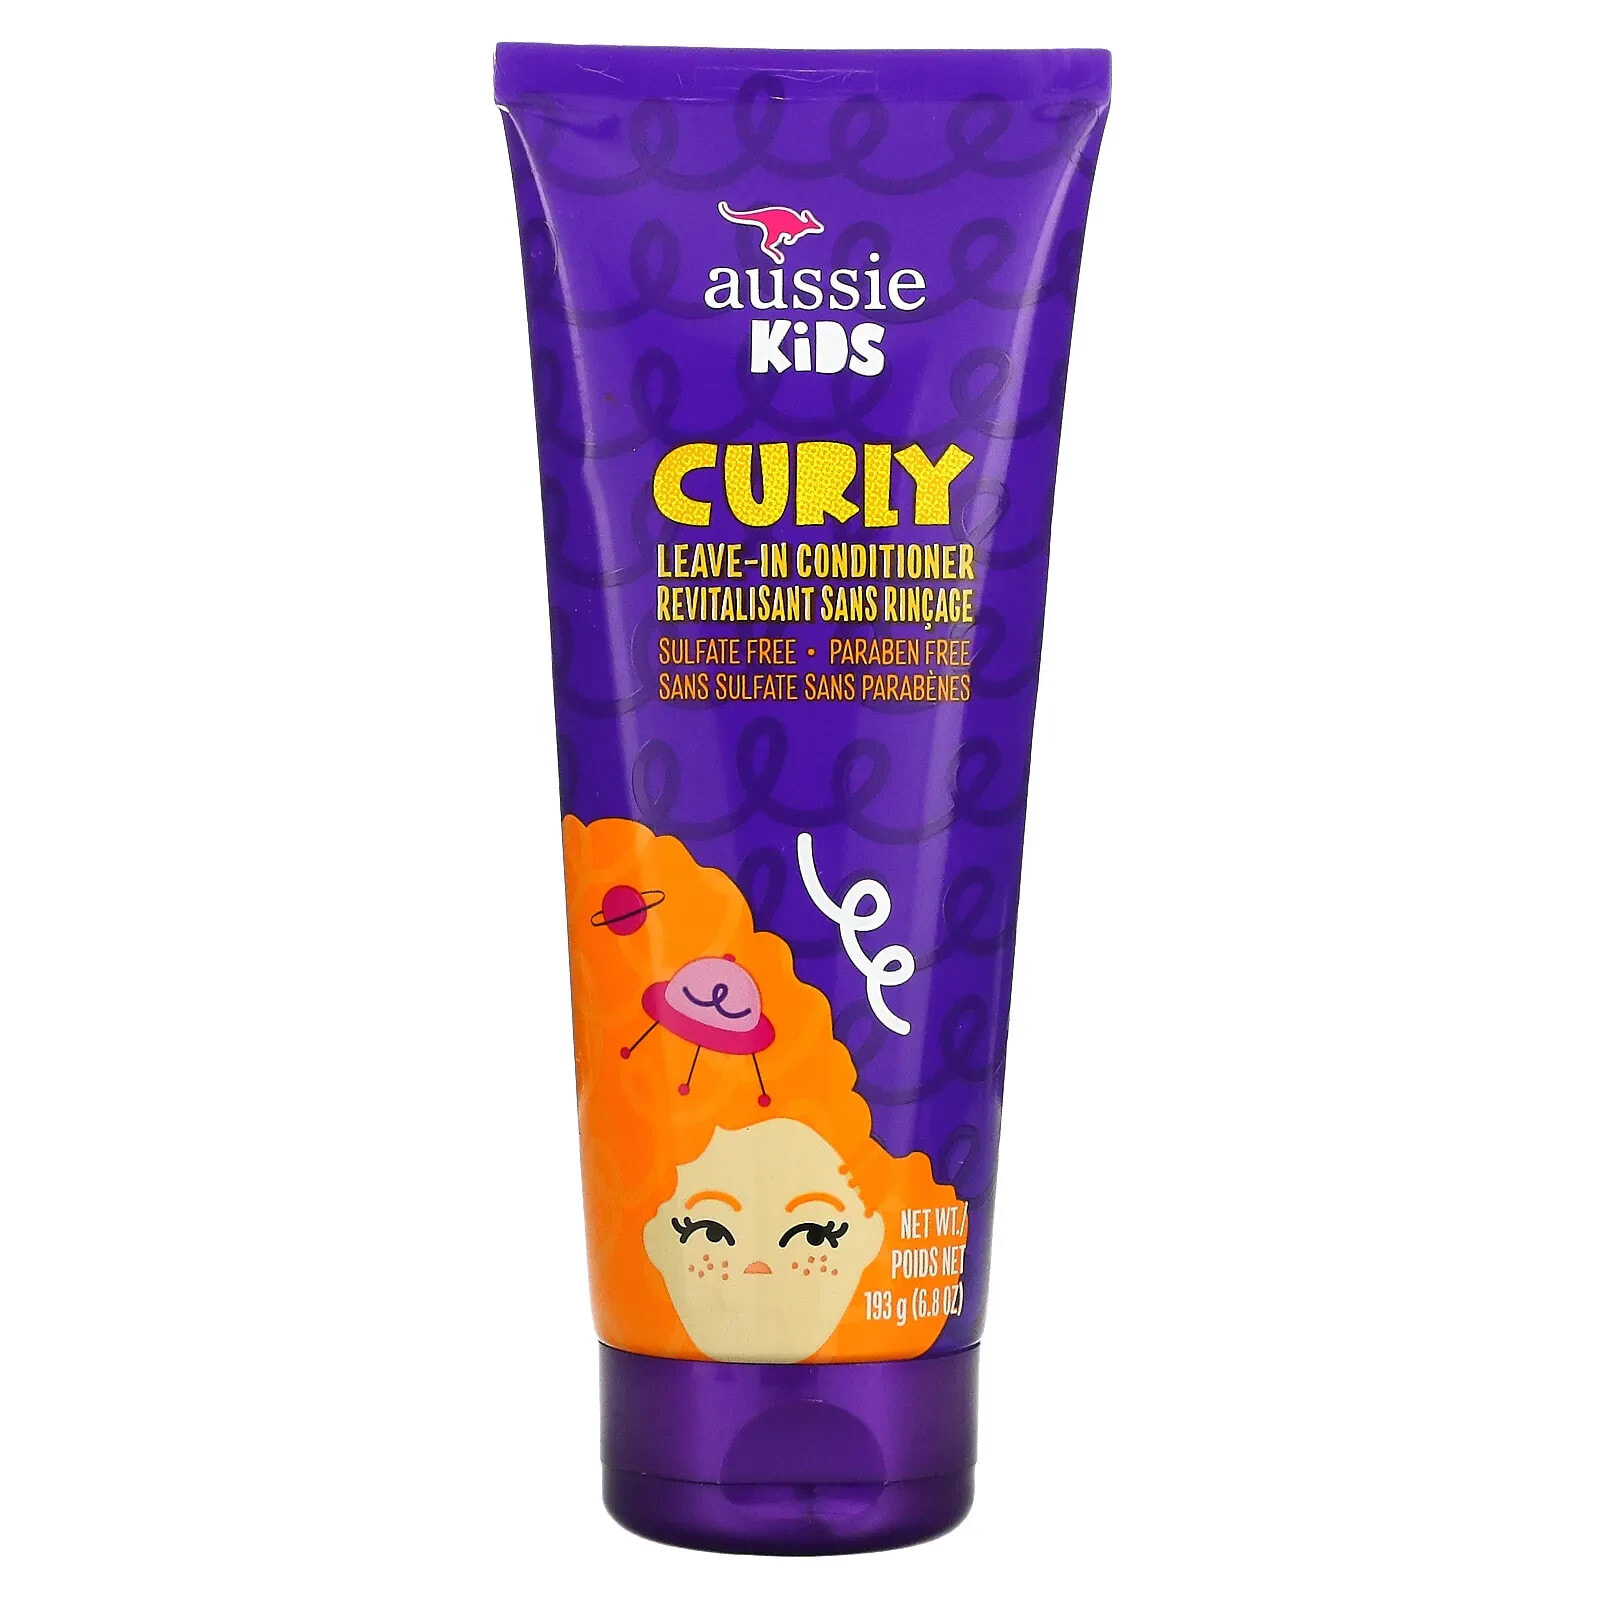 Aussie Kids Curly Leave-In Conditioner Несмываемый детский кондиционер для кудрявых волос 193 г